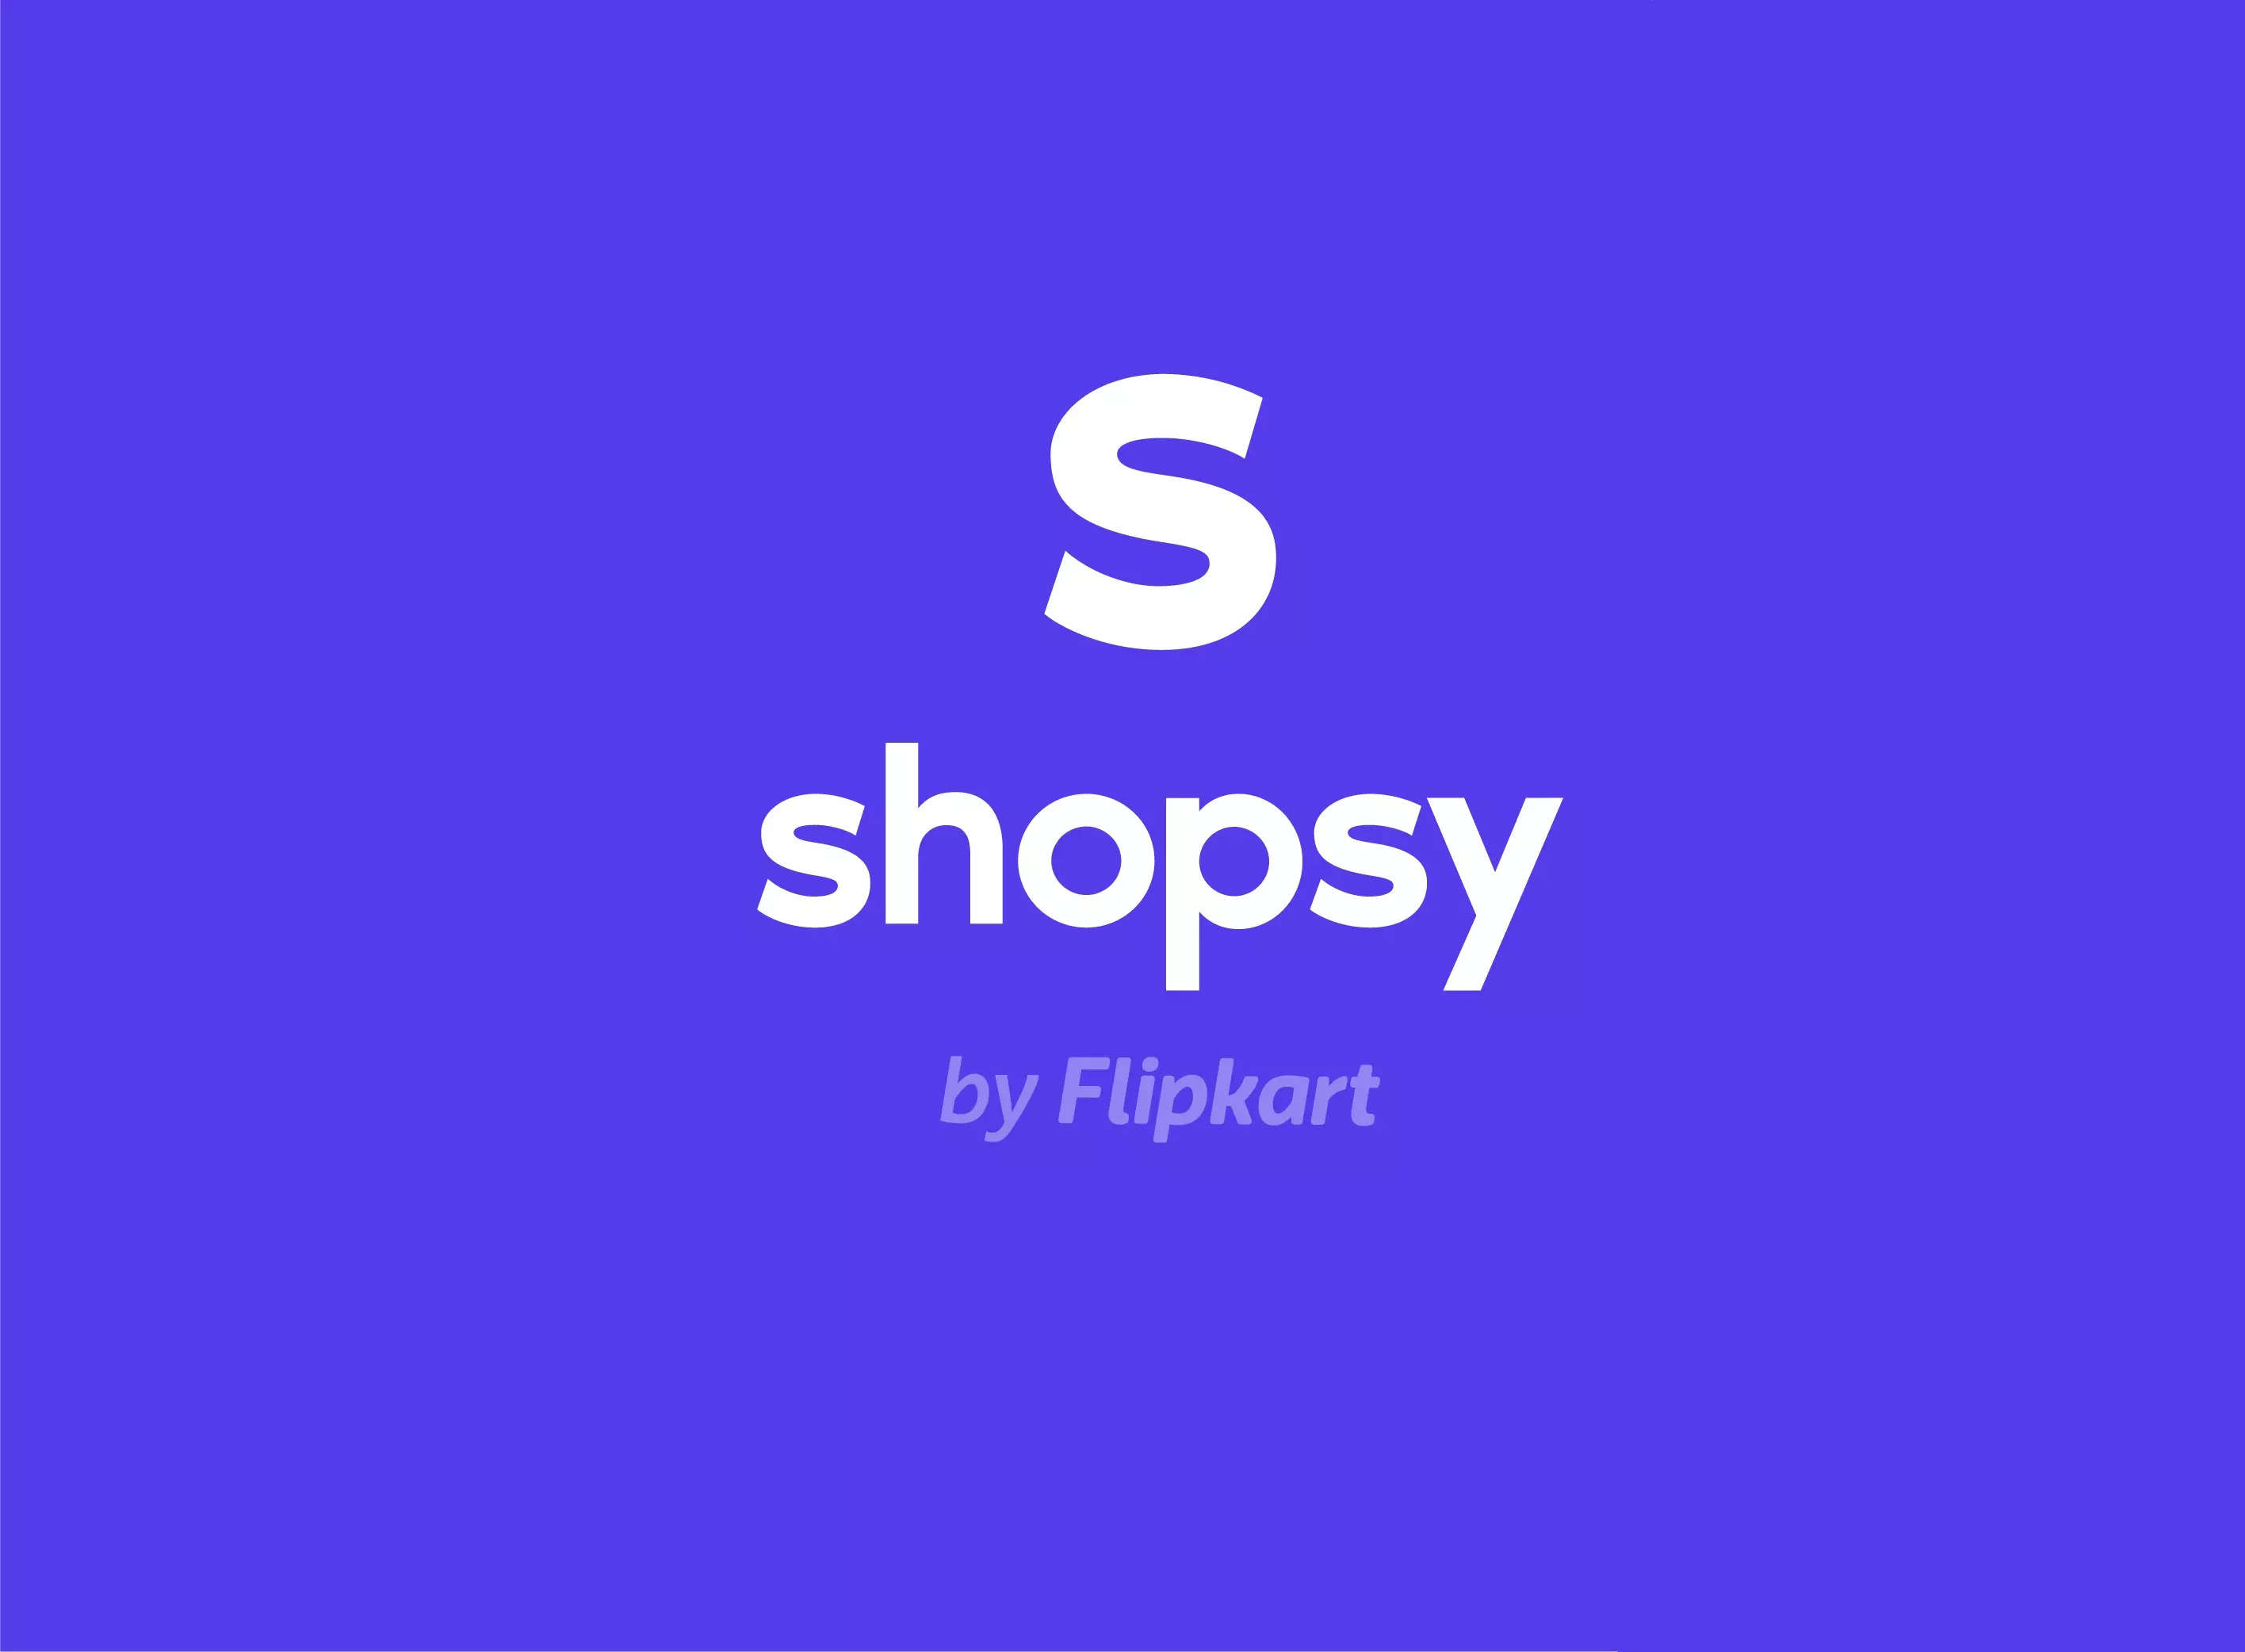 Flipkart's Shopsy crosses the 10 million+ mark on Play Store backed by ...